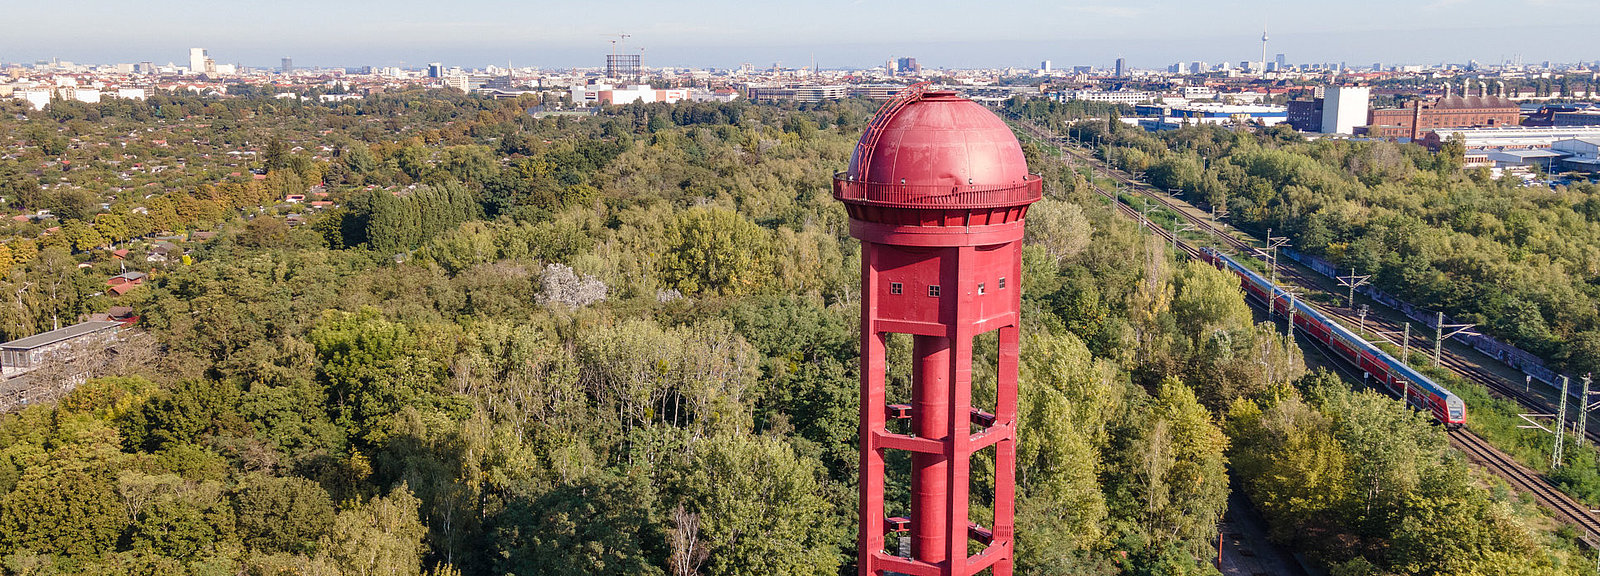 Drohnenfoto des Wasserturms im Natur Park Südgelände in Berlin